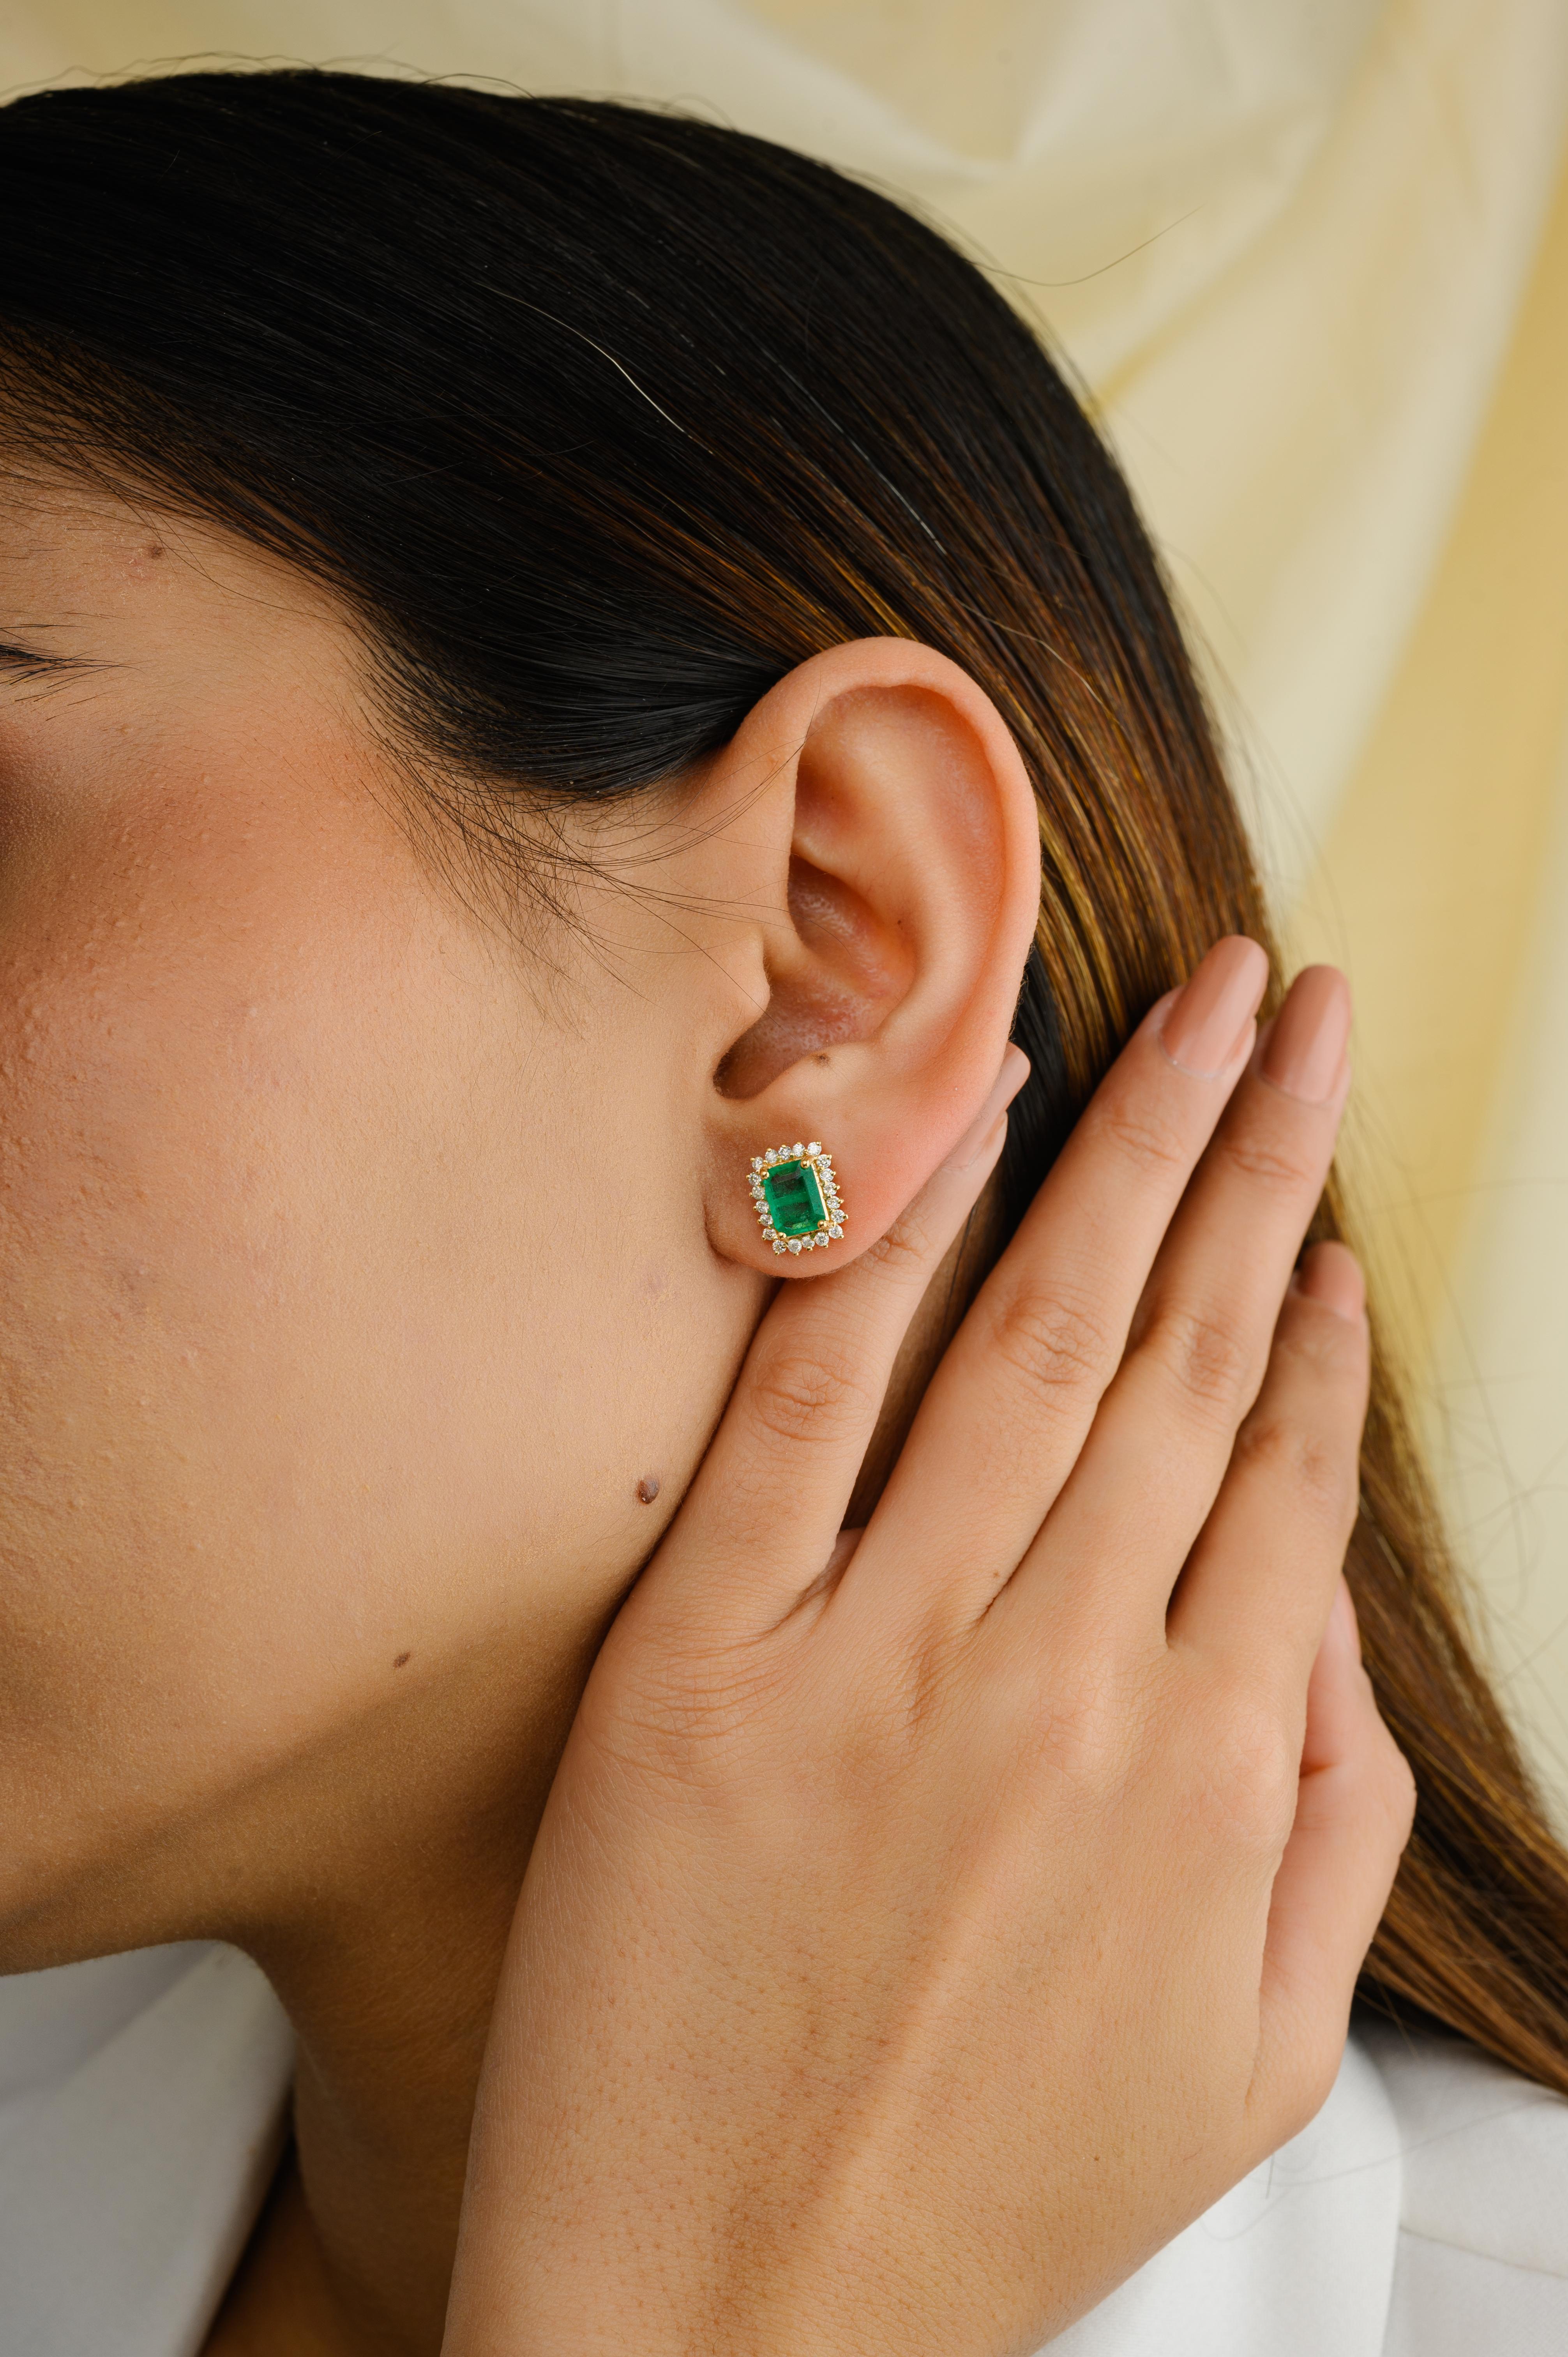 Octagon Cut 18 Karat Yellow Gold Certified Emerald Halo Diamond Stud Earrings for Women